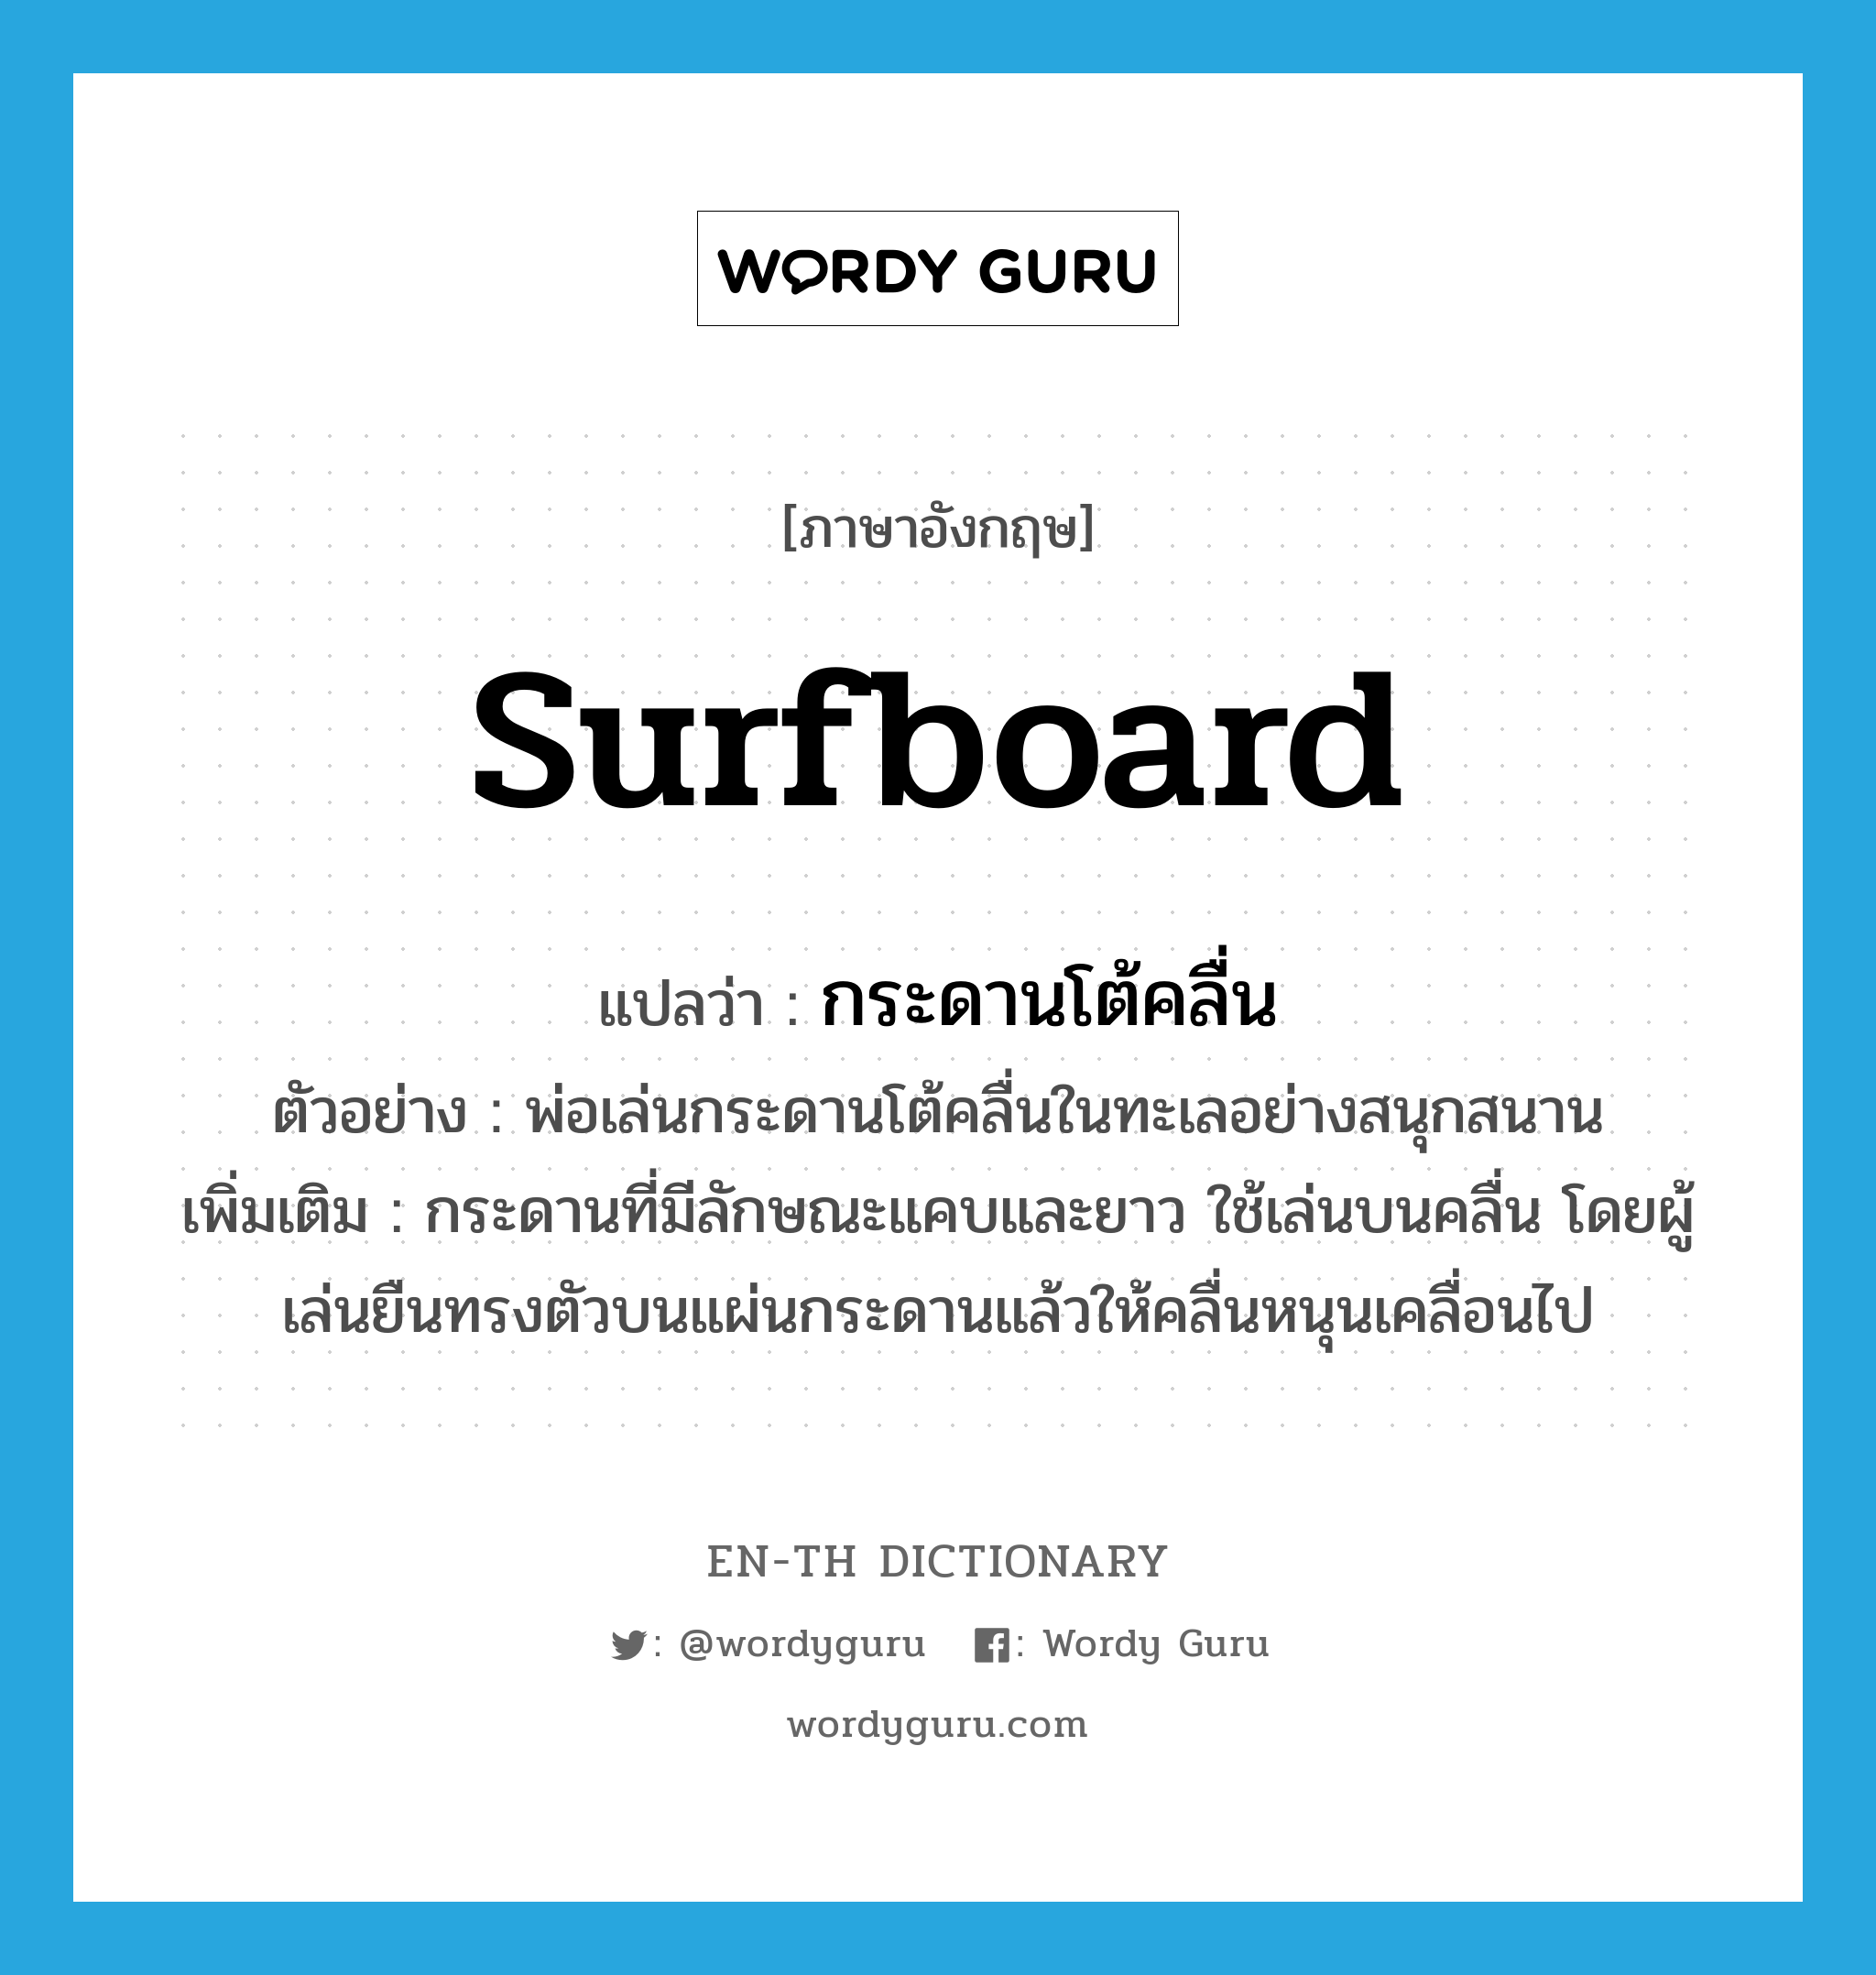 surfboard แปลว่า?, คำศัพท์ภาษาอังกฤษ surfboard แปลว่า กระดานโต้คลื่น ประเภท N ตัวอย่าง พ่อเล่นกระดานโต้คลื่นในทะเลอย่างสนุกสนาน เพิ่มเติม กระดานที่มีลักษณะแคบและยาว ใช้เล่นบนคลื่น โดยผู้เล่นยืนทรงตัวบนแผ่นกระดานแล้วให้คลื่นหนุนเคลื่อนไป หมวด N